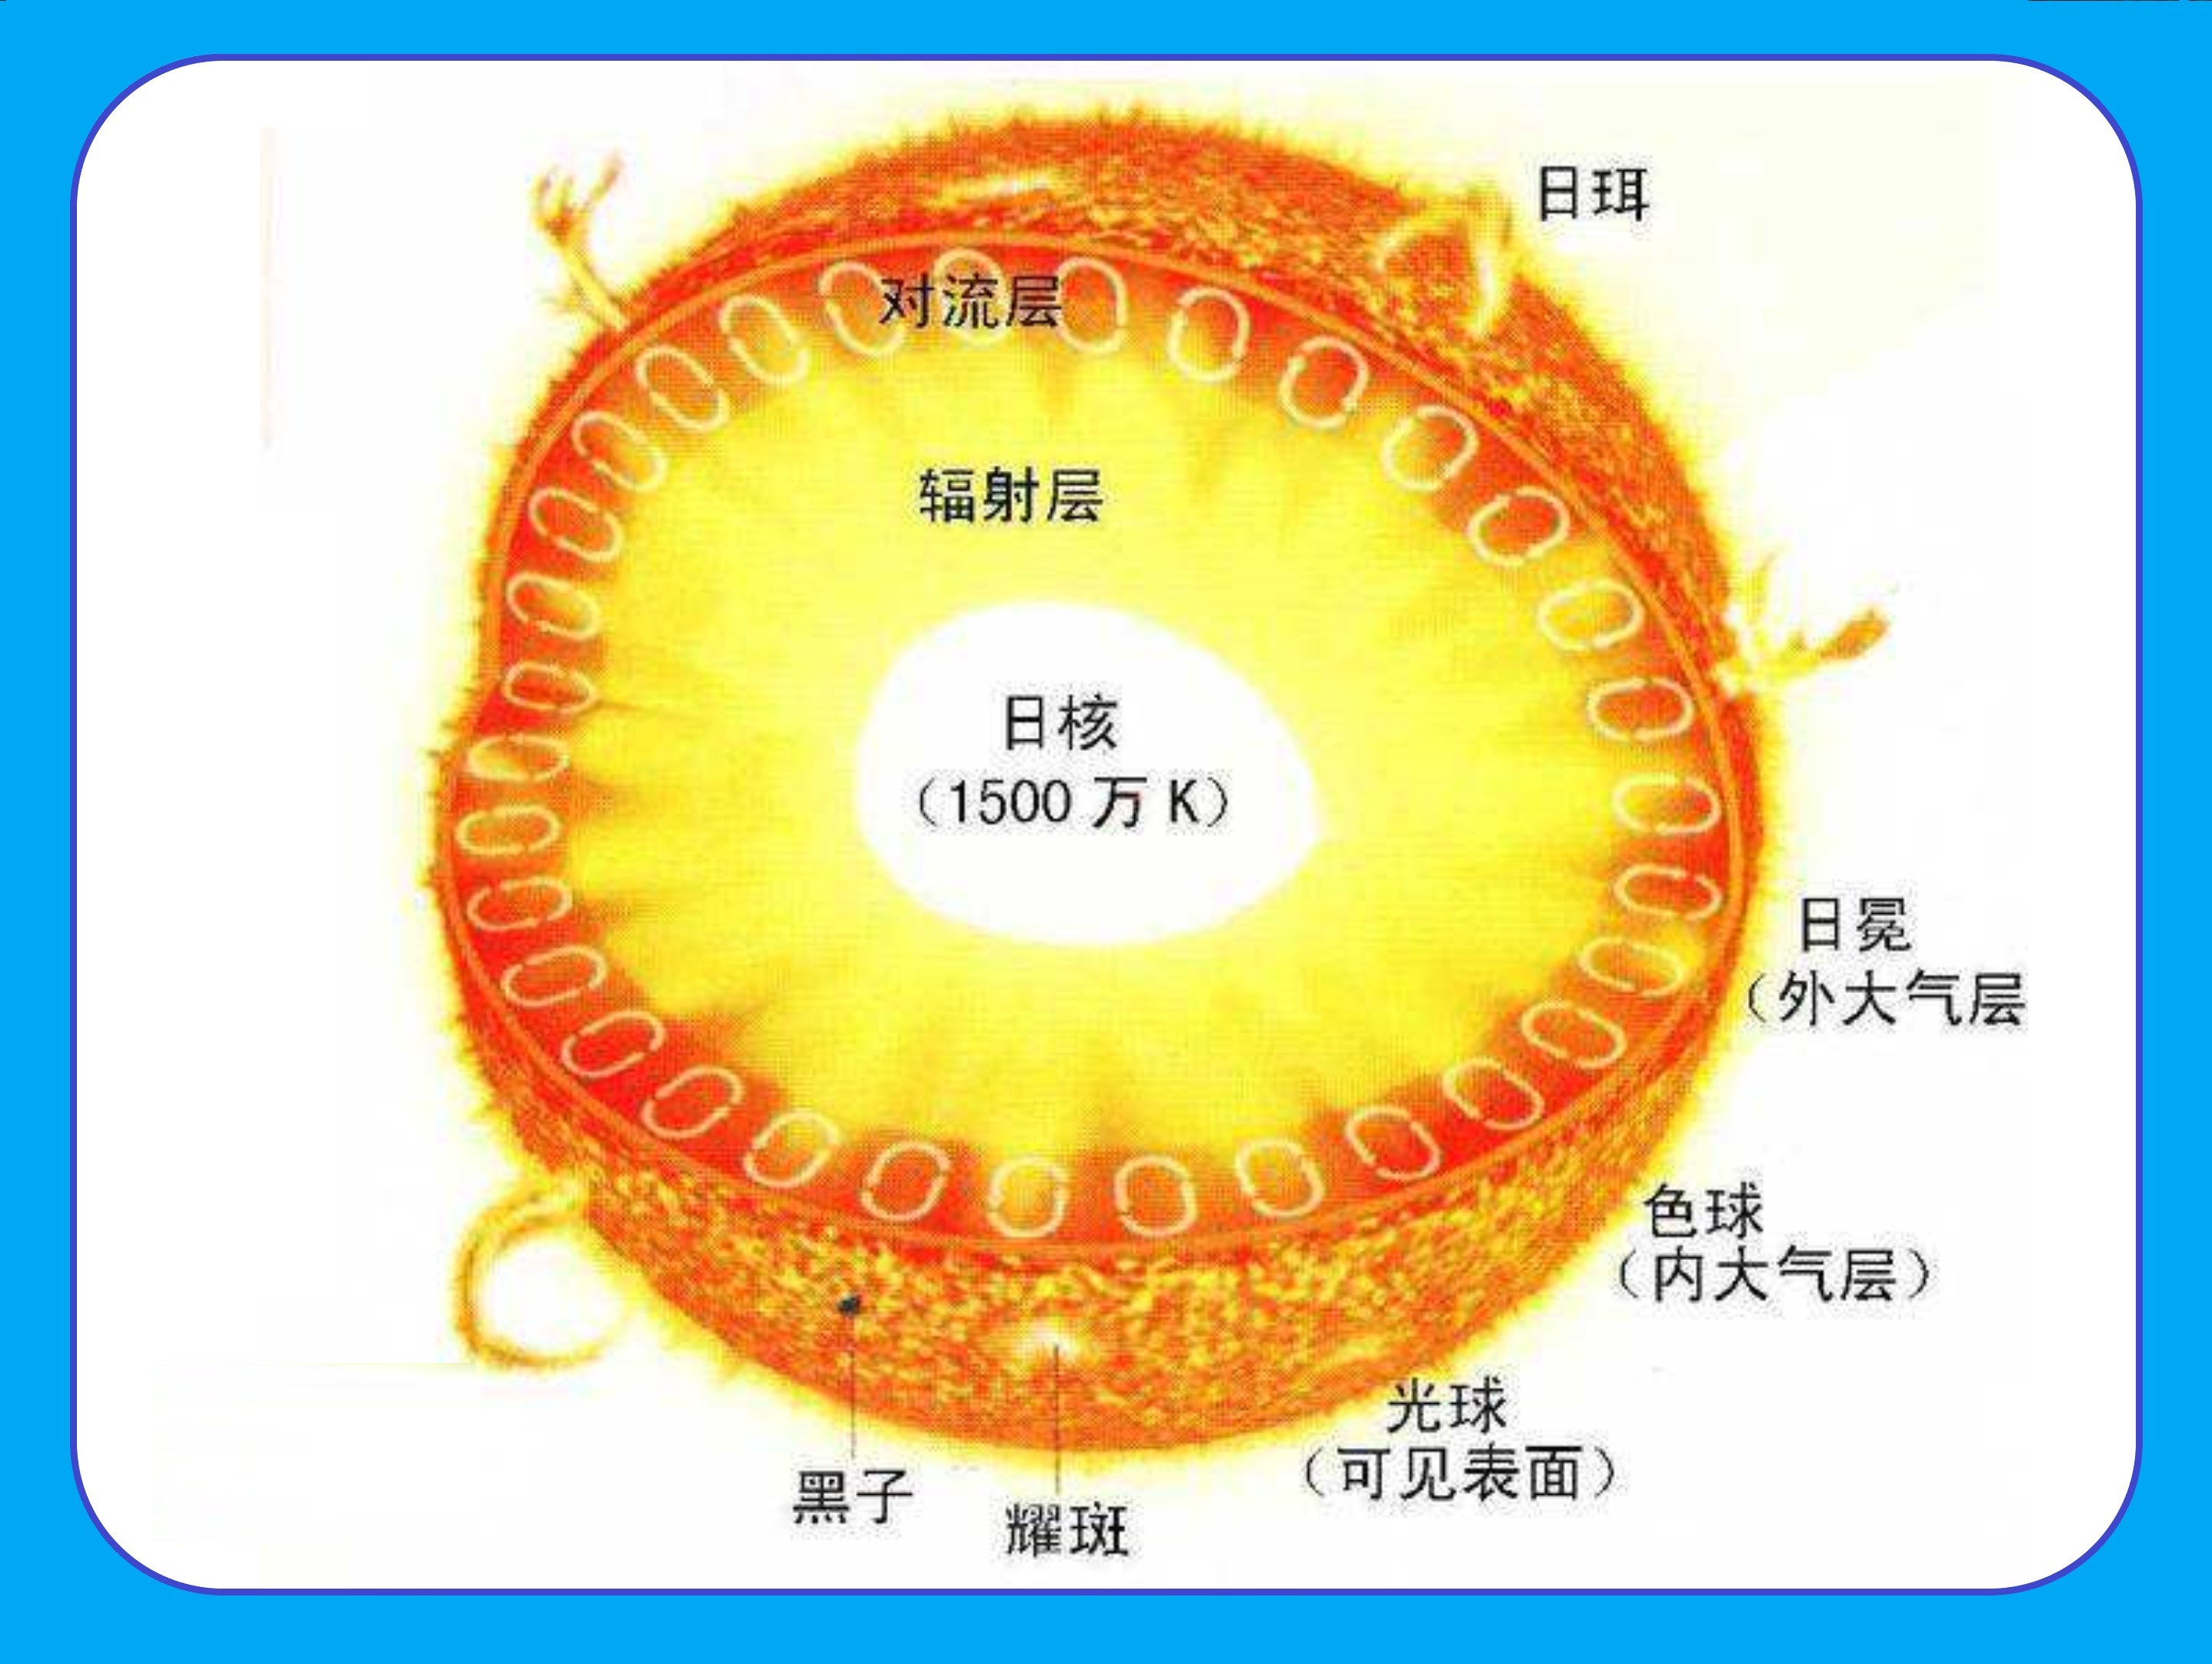 太阳结构图 分层图片